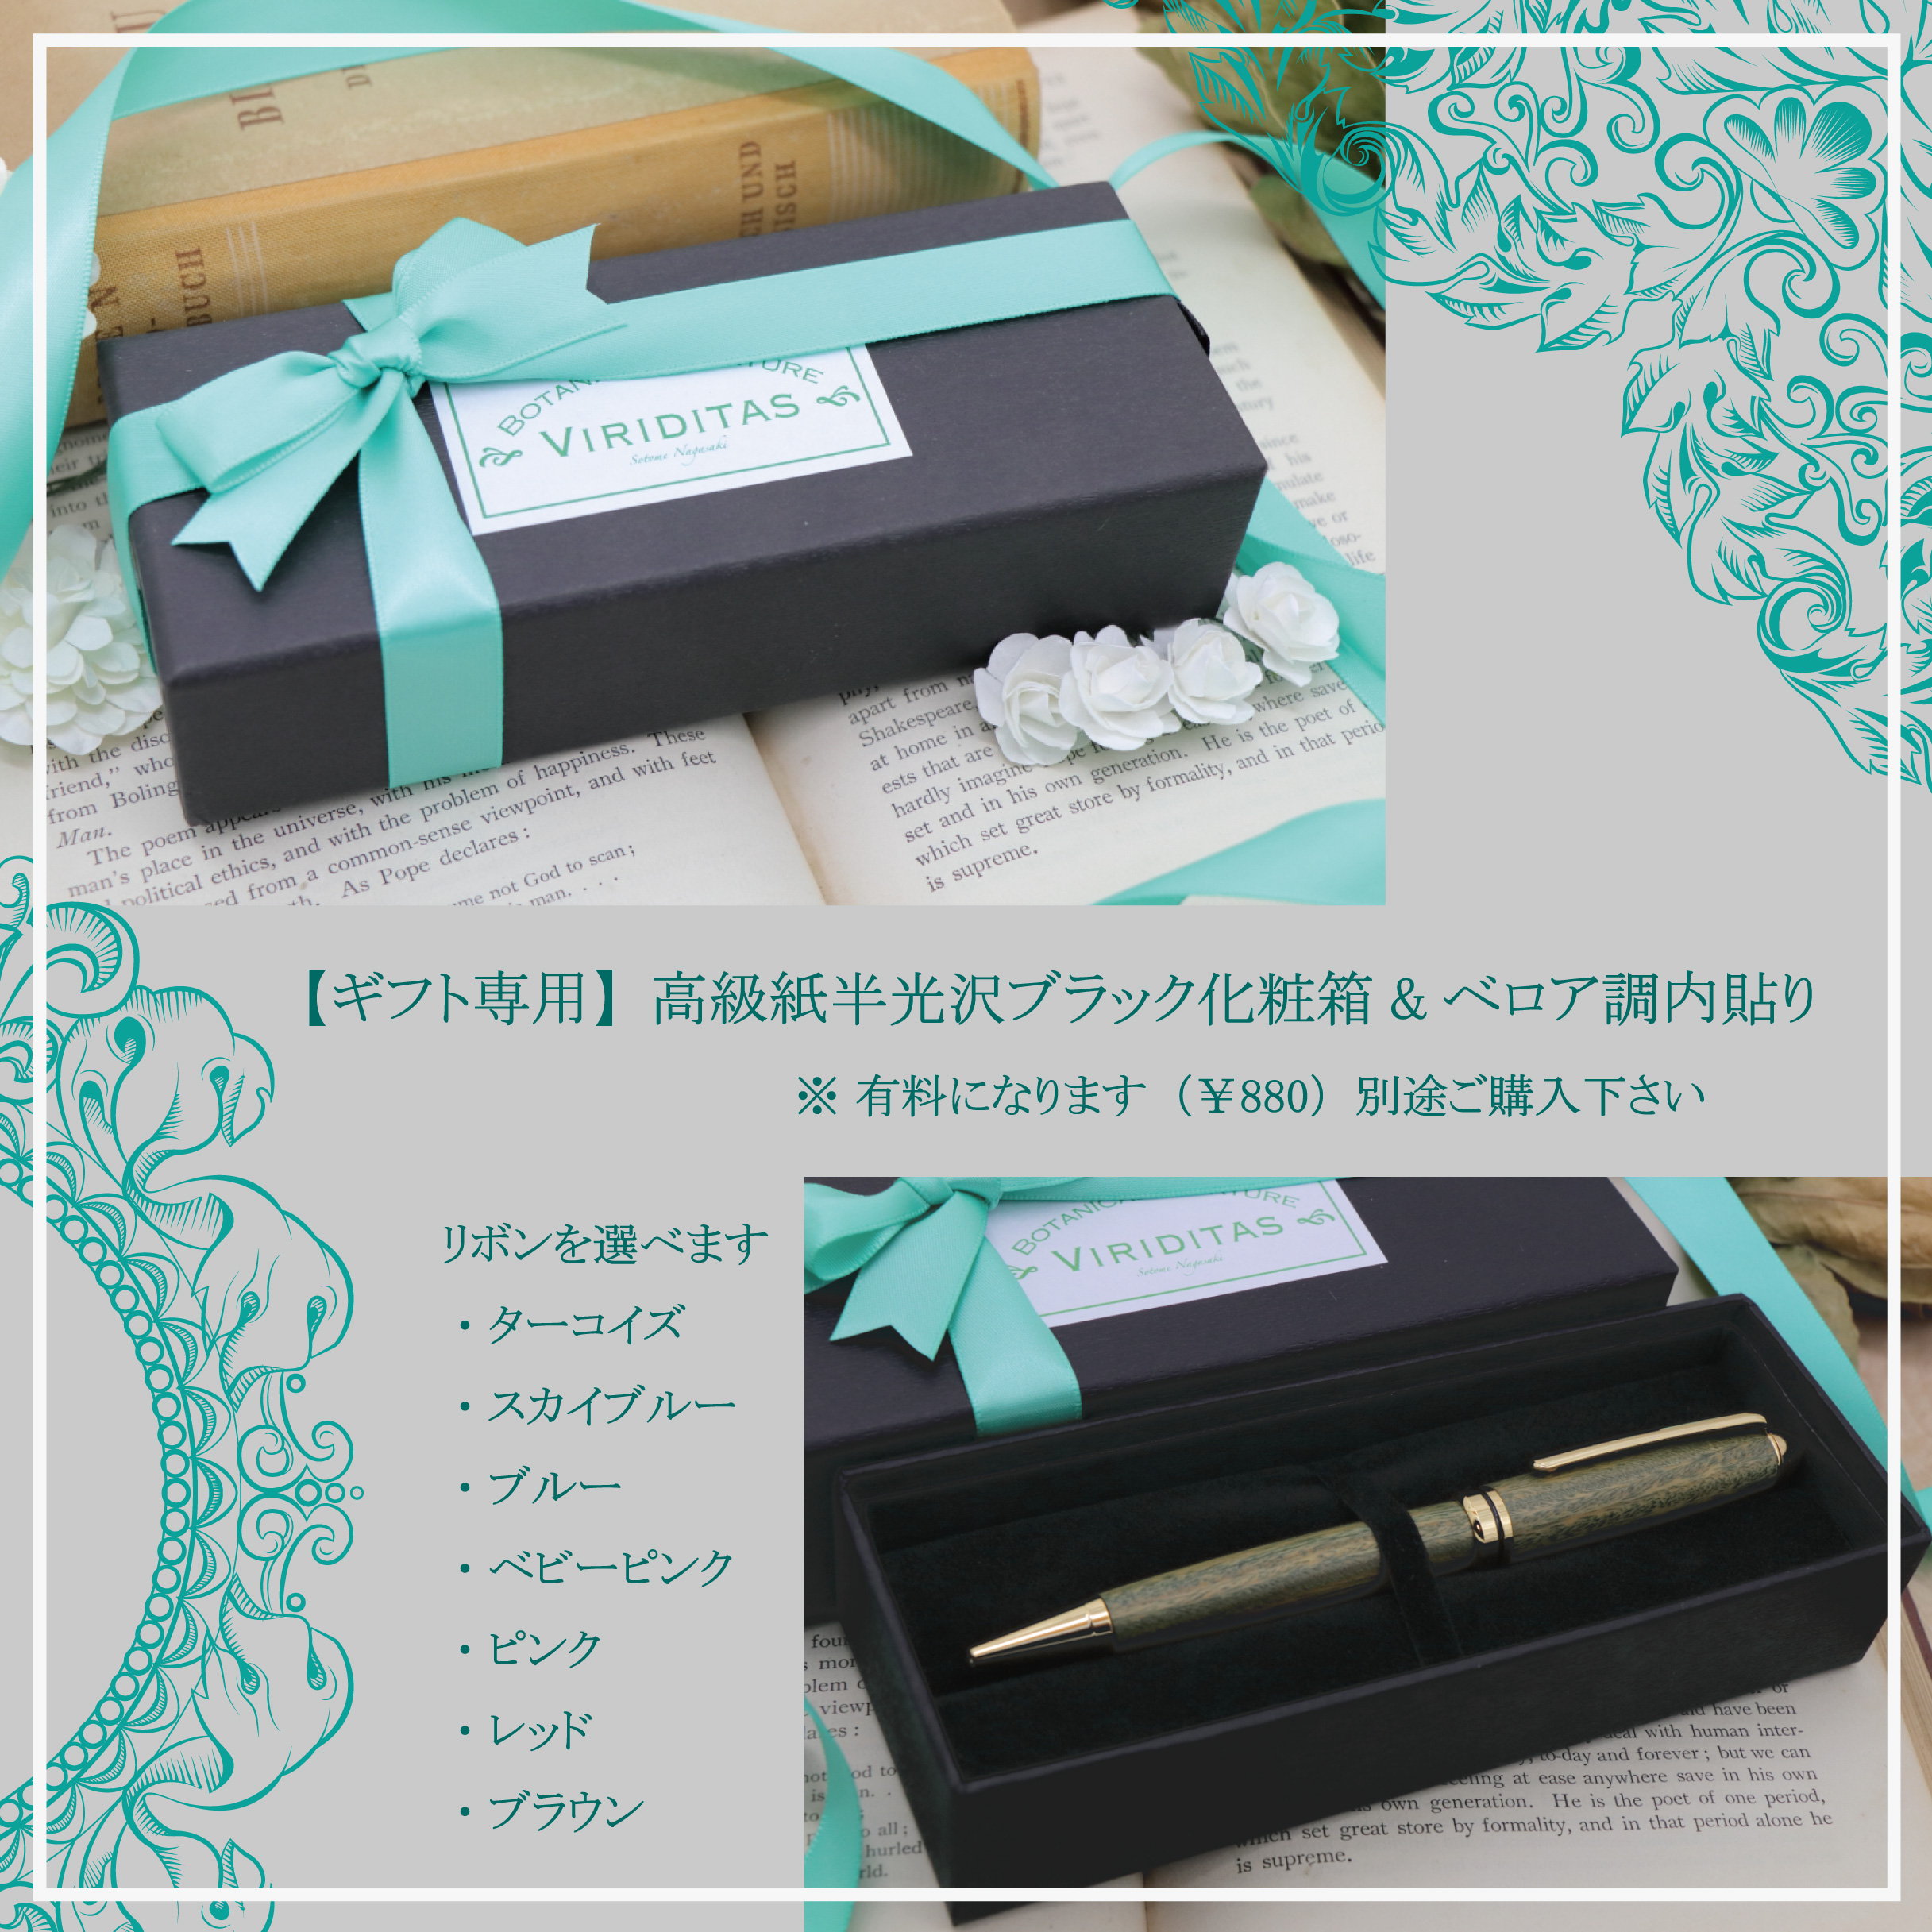 Viriditasペン専用ギフトラッピング 高級box 化粧箱 サテンリボン Iichi ハンドメイド クラフト作品 手仕事品の通販